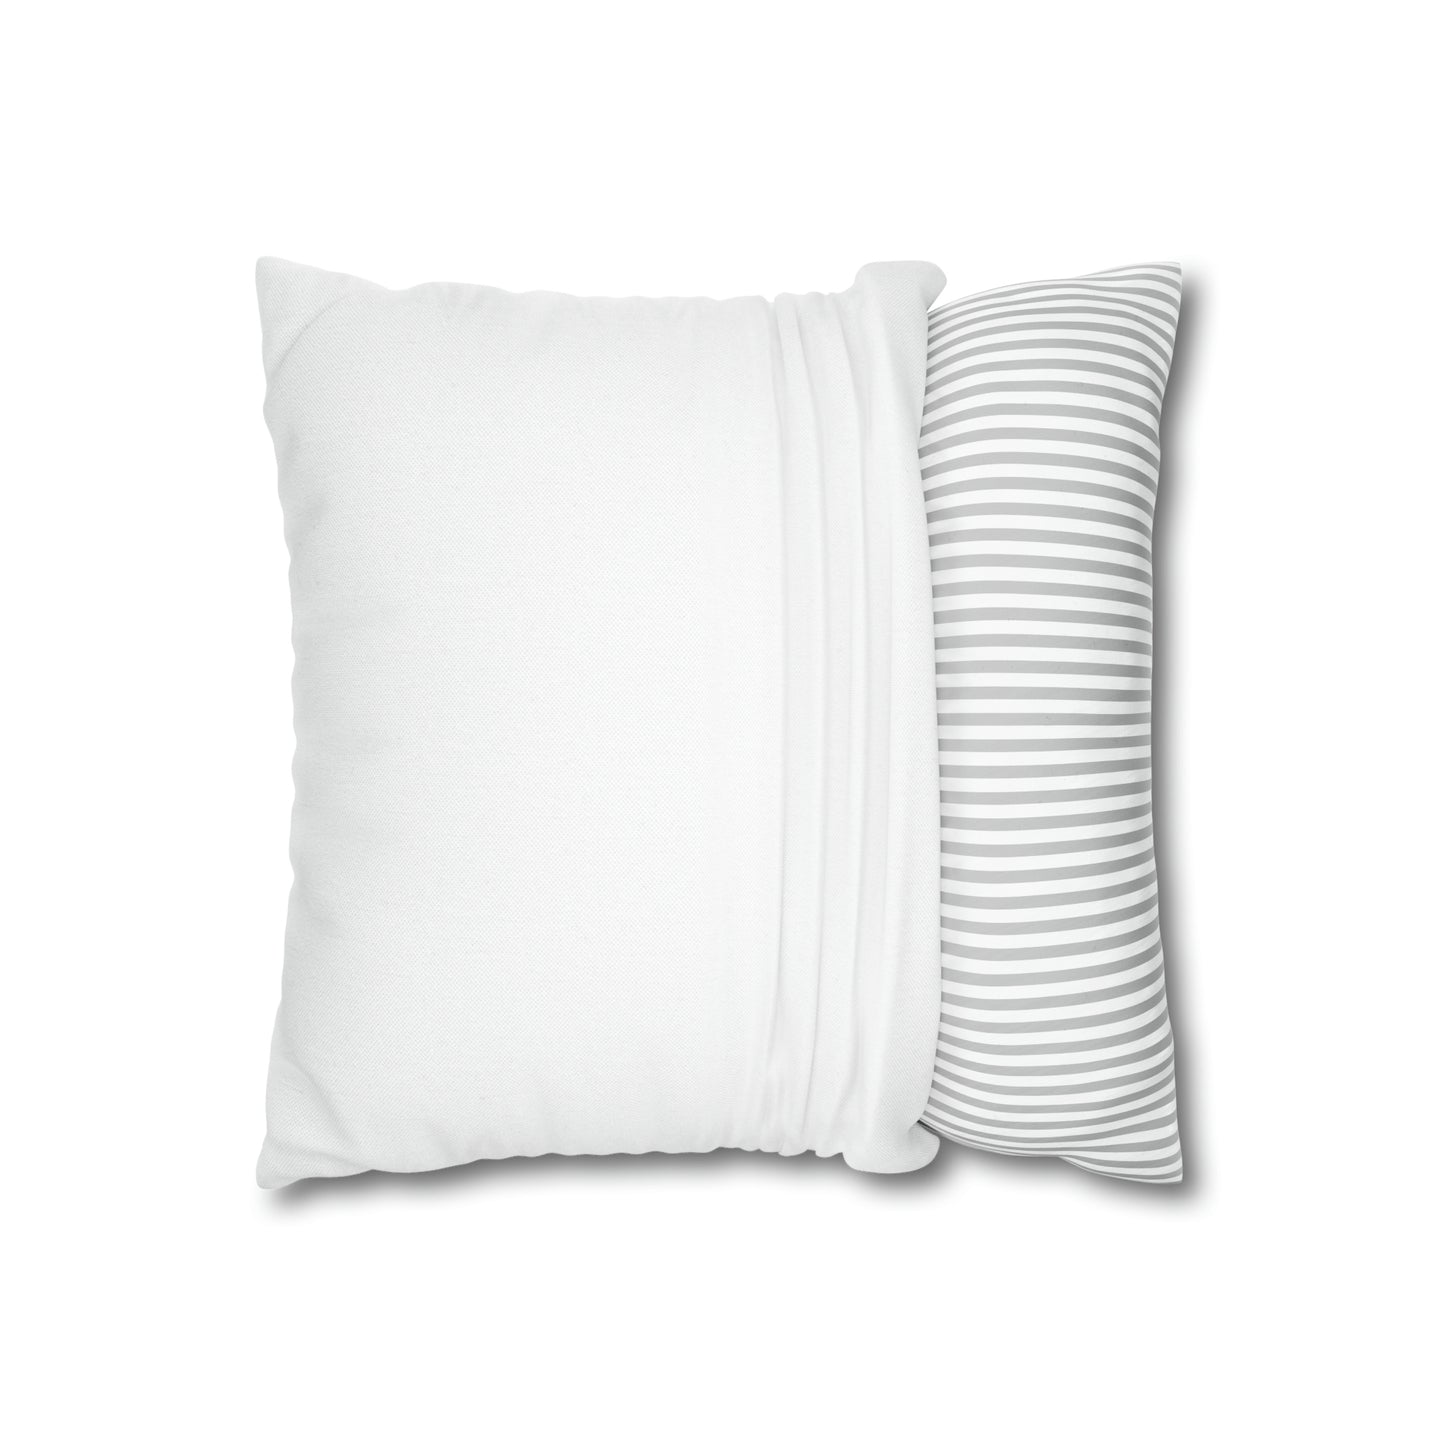 Bunnymas Spun Polyester Square Pillow Case